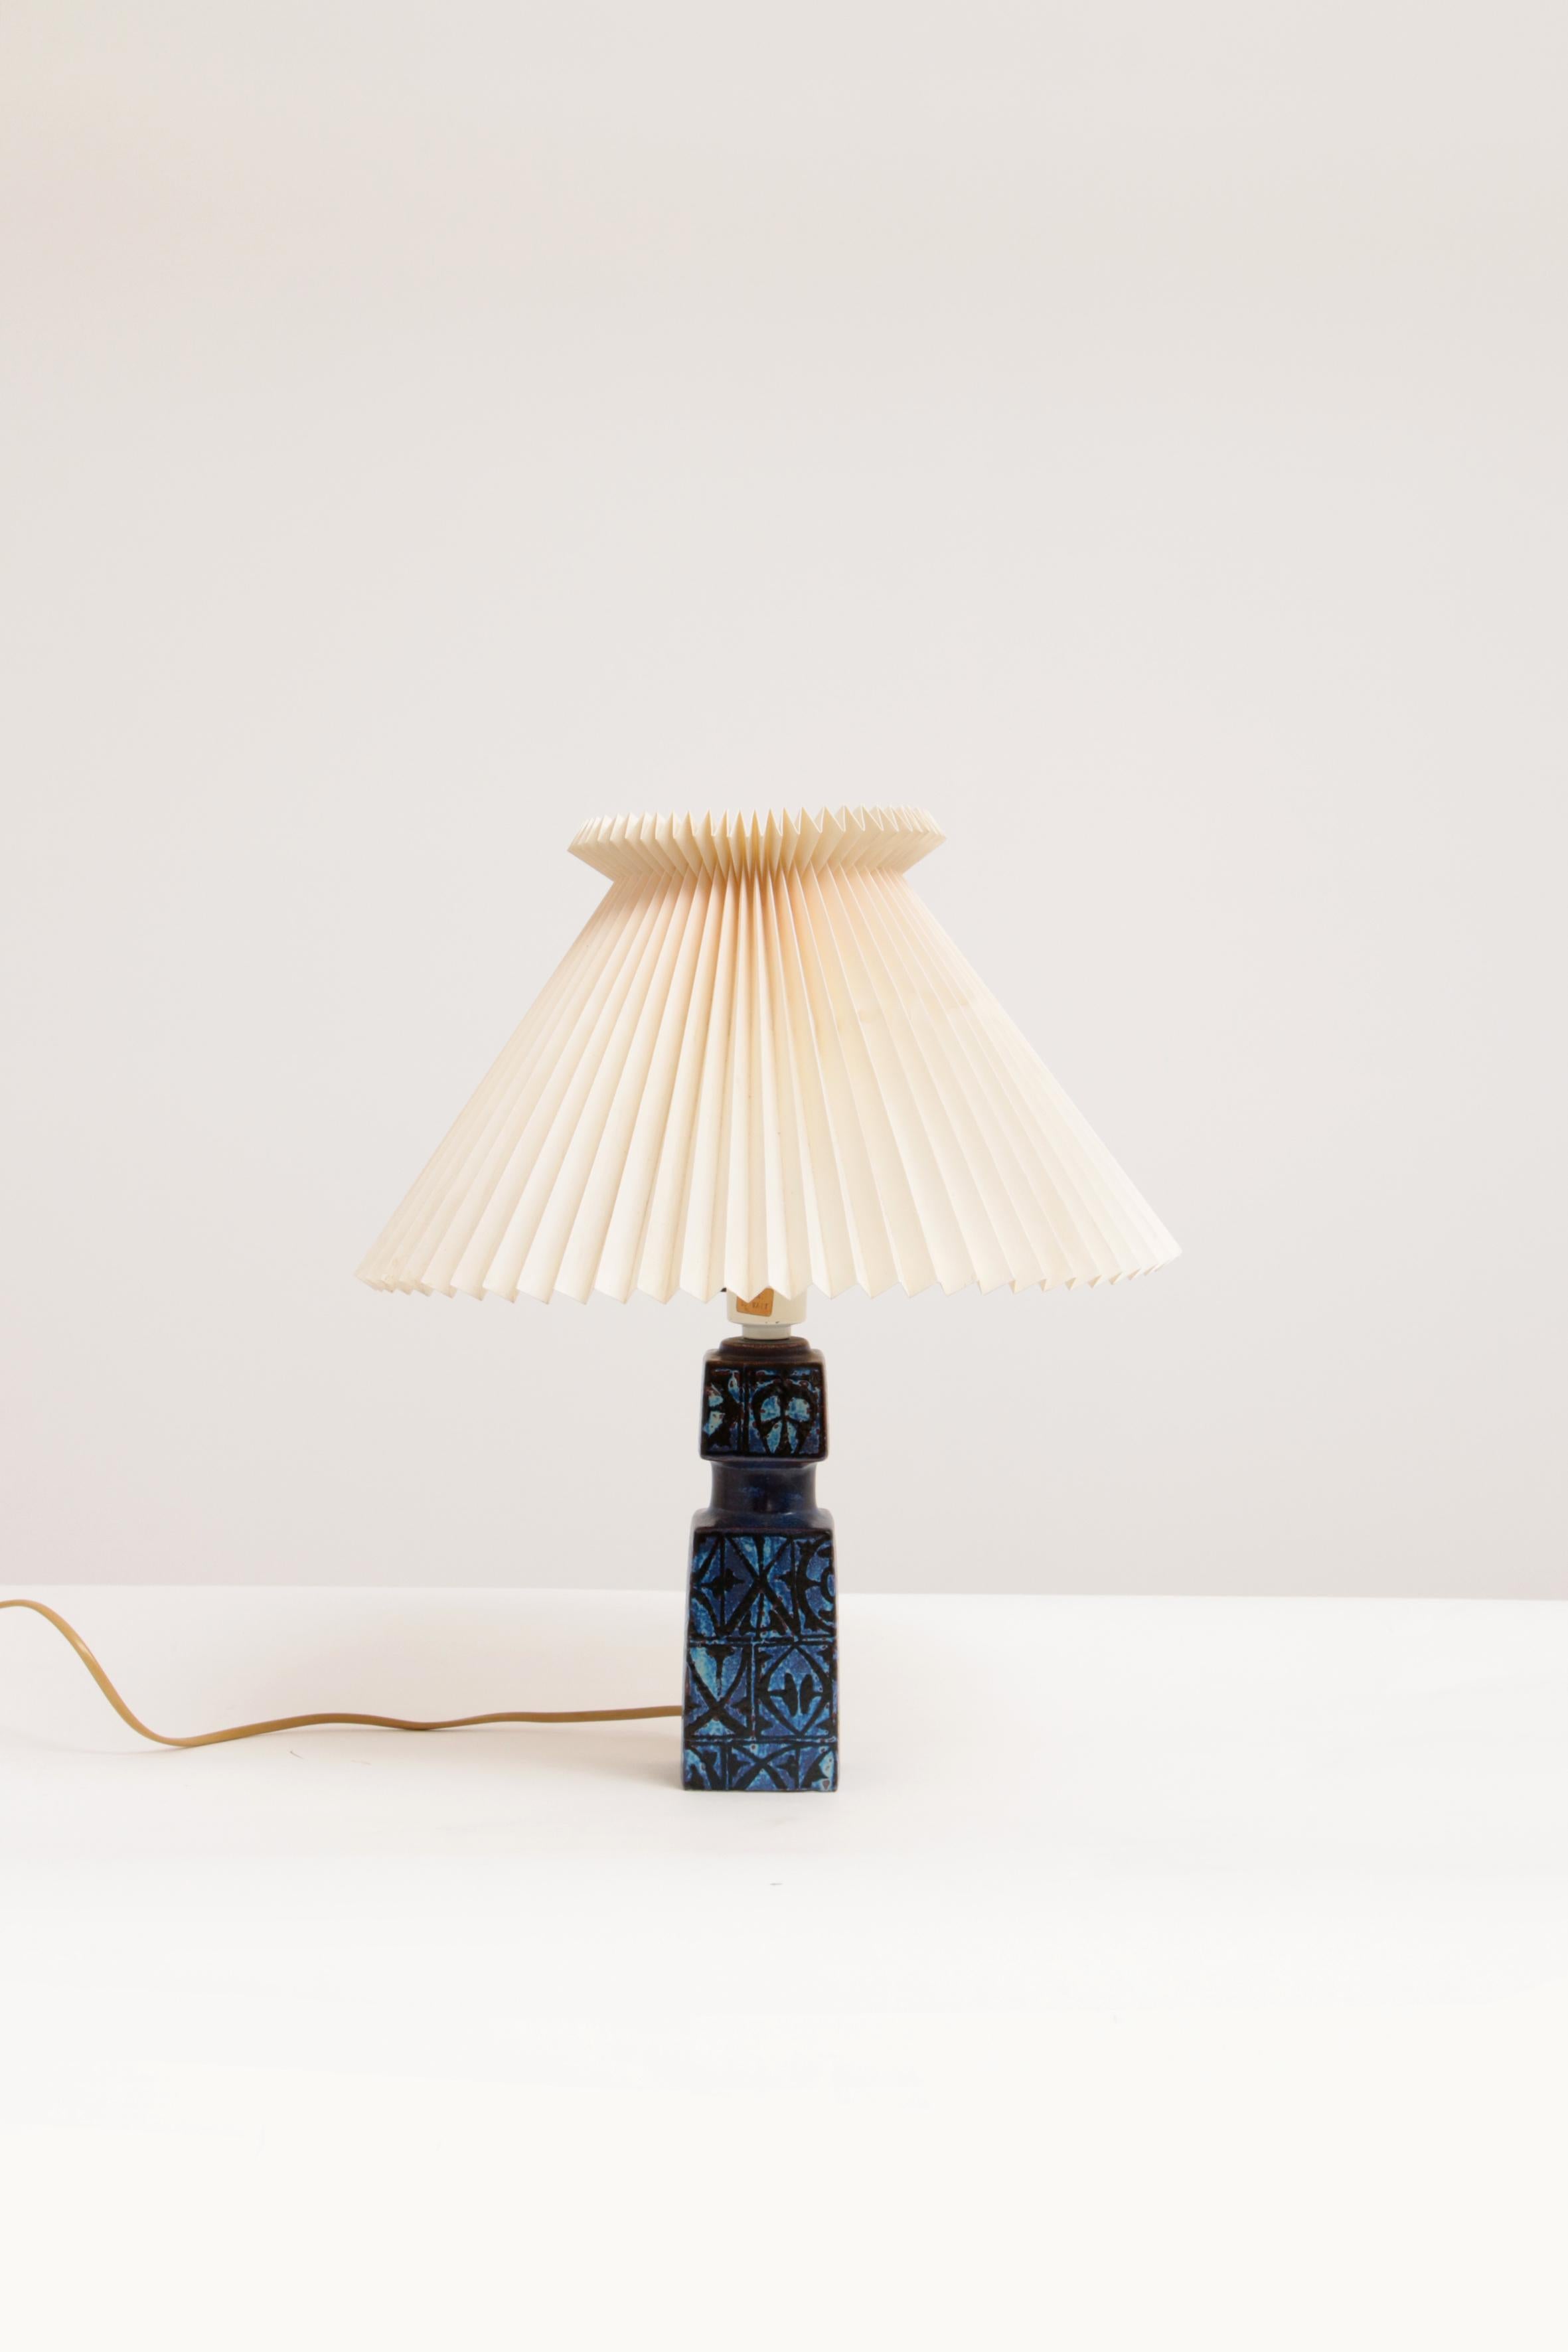 Keramische Tischlampe, entworfen von Nils Thorsson für Royal Copenhagen und Fog & Mørup, um 1970. Modell Baca.

Es hat ein taktiles abstraktes Dekor mit Schwarz auf einem fast lila getönten Blau. Die angegebene Höhe ist mit Lampe und ohne Schirm.